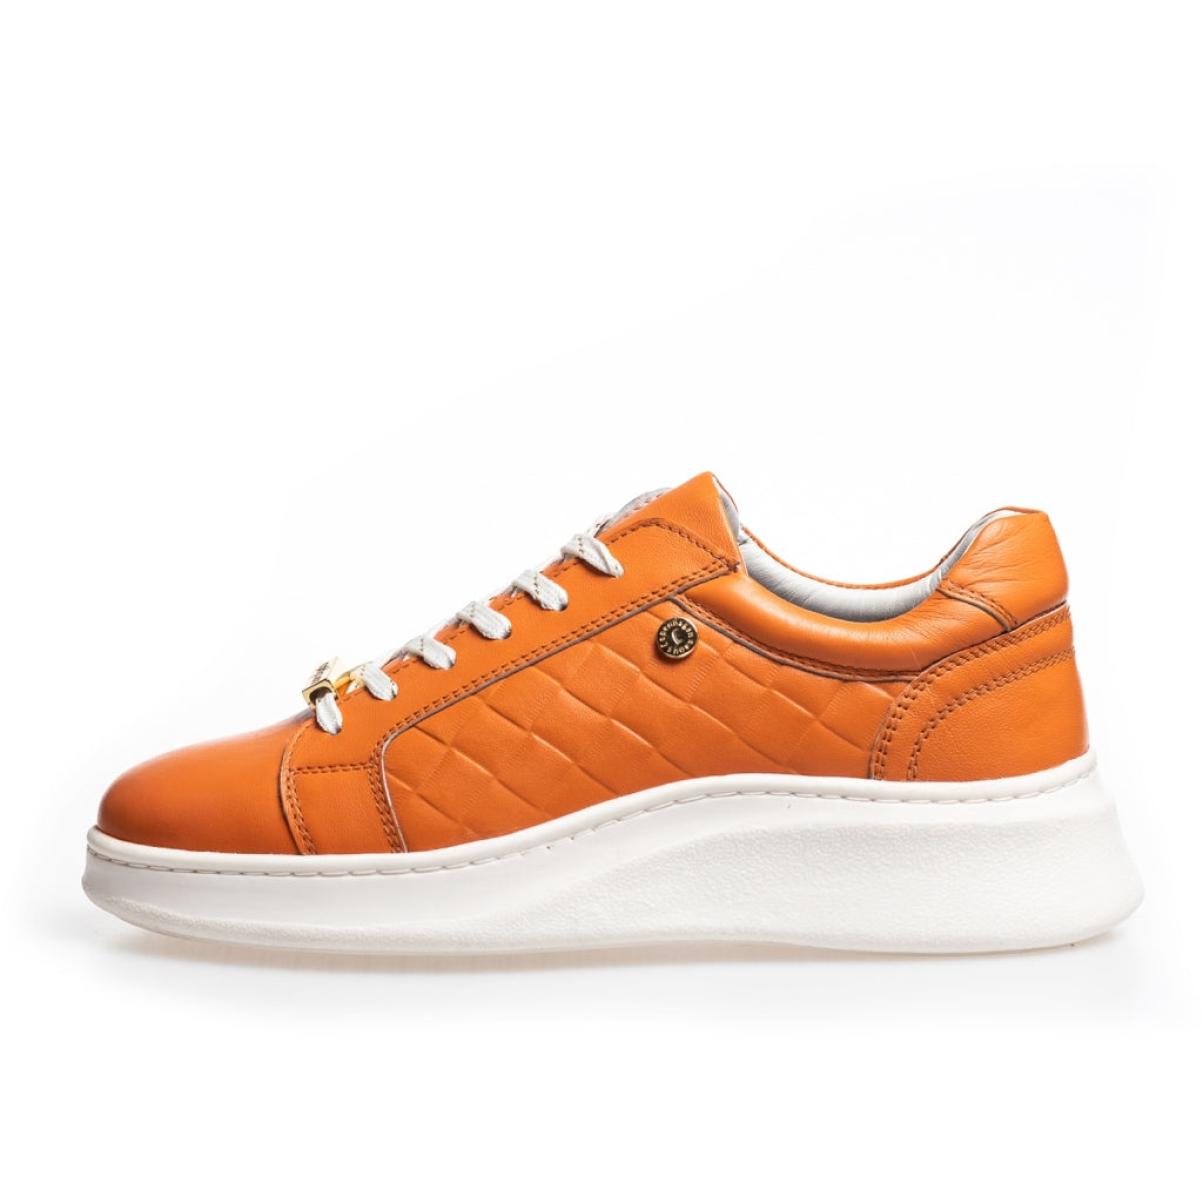 Sneakers Love - Burnt Orange Sneakers Relaxing Copenhagen Shoes Women